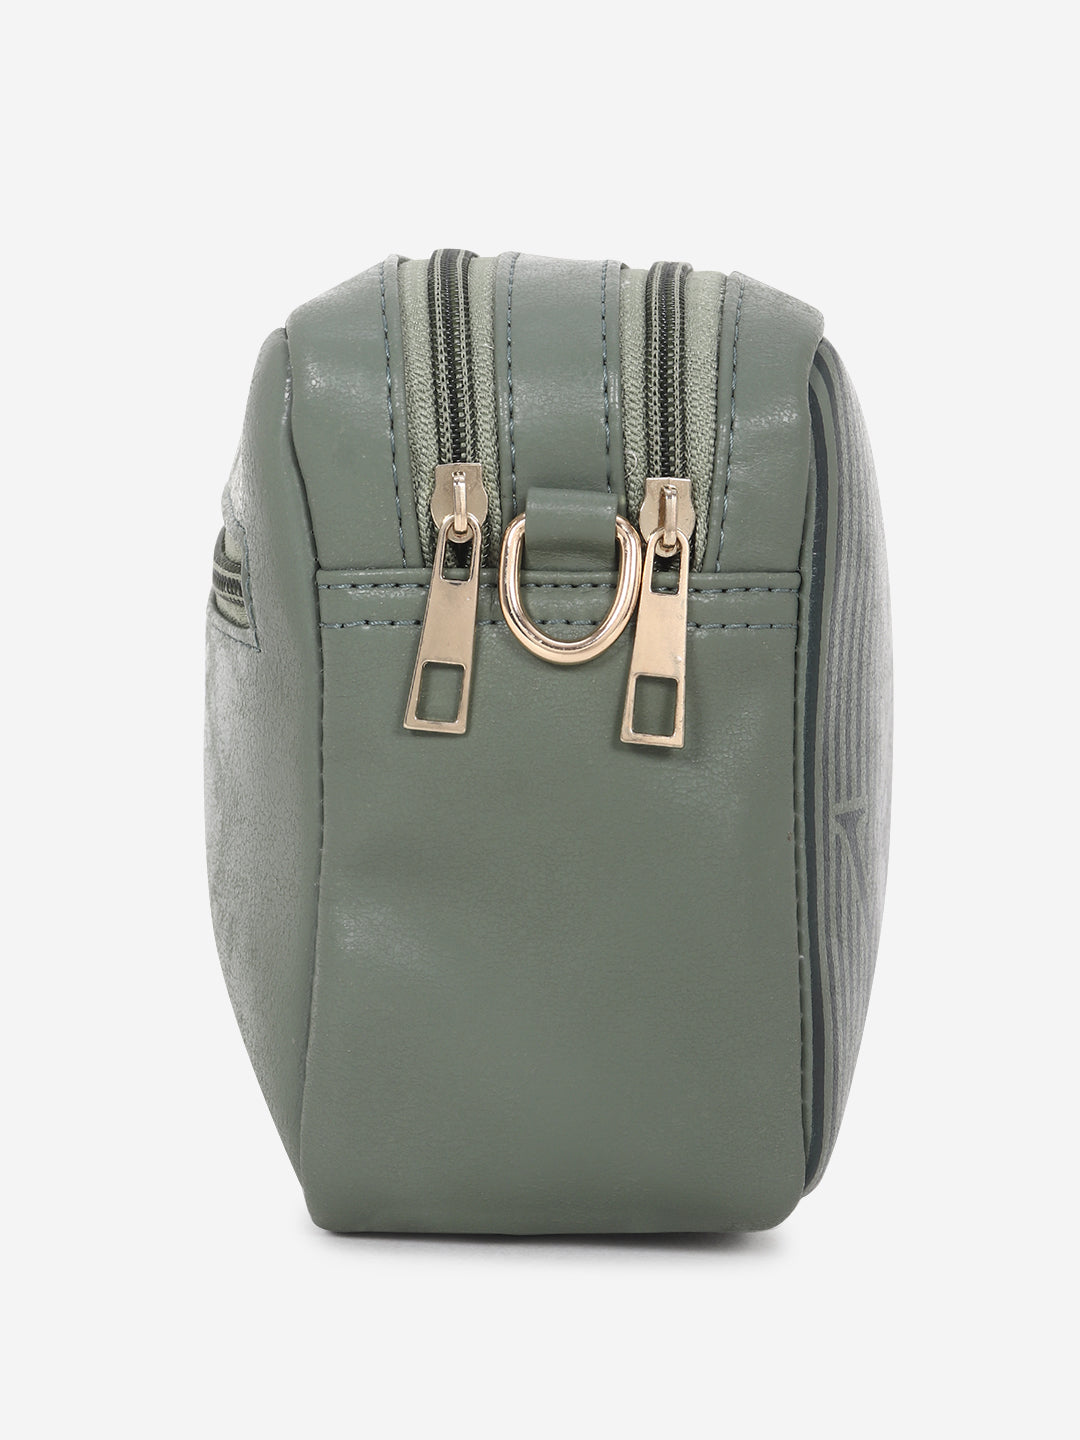 Olive Green Printed Sling Bag